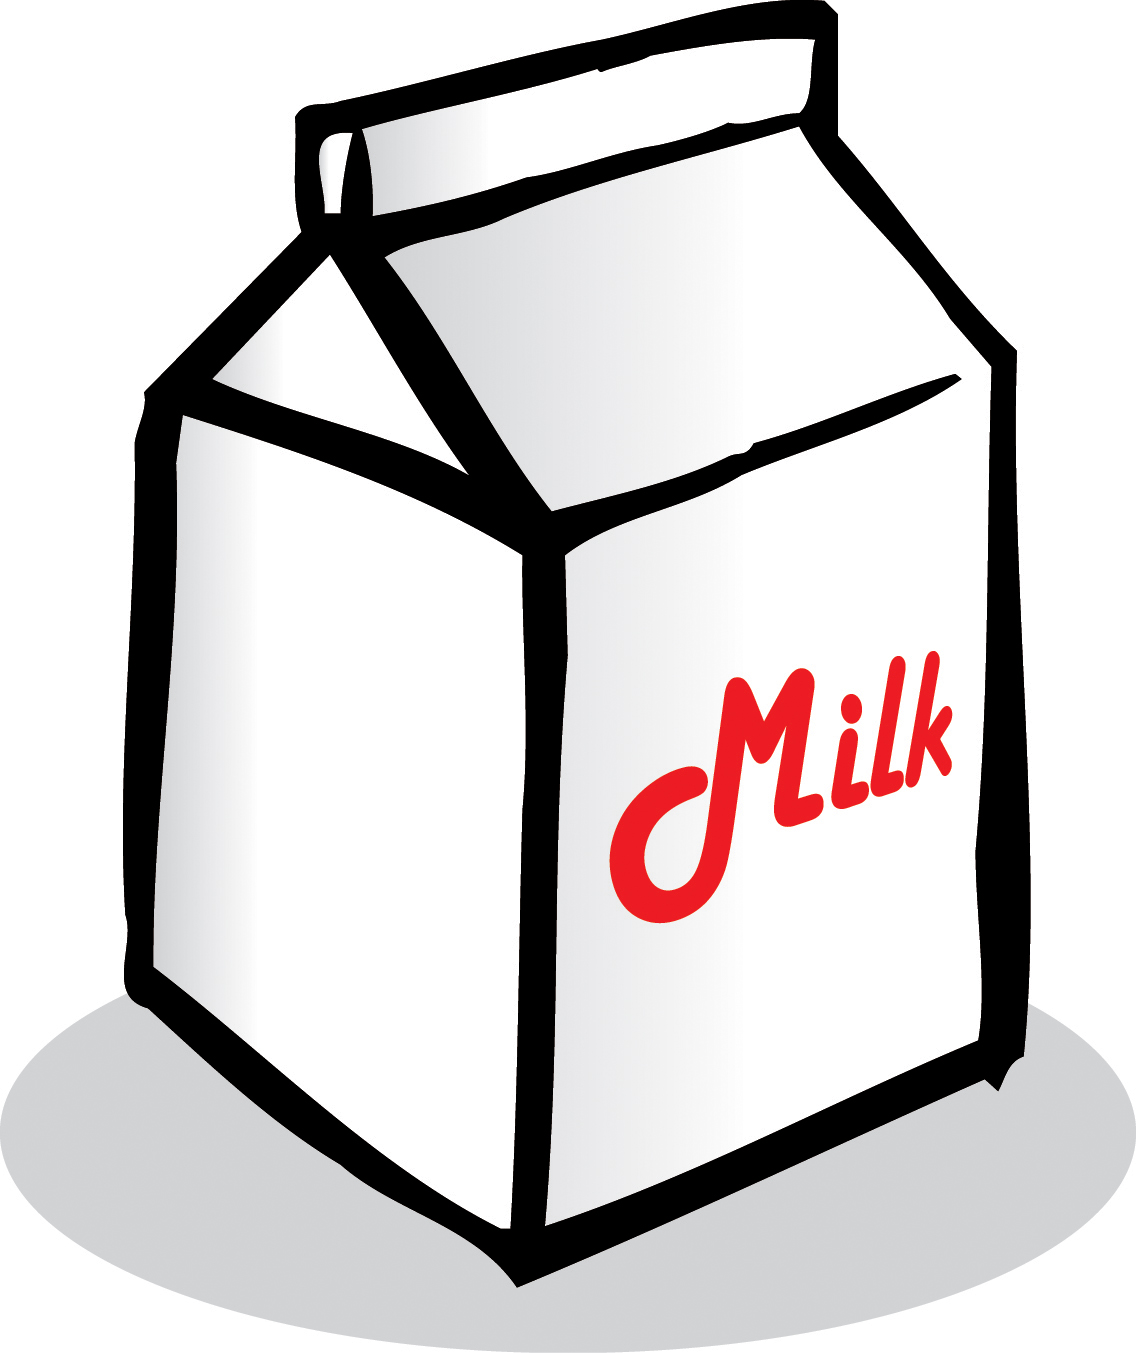 Milk carton clip art - ClipartFox